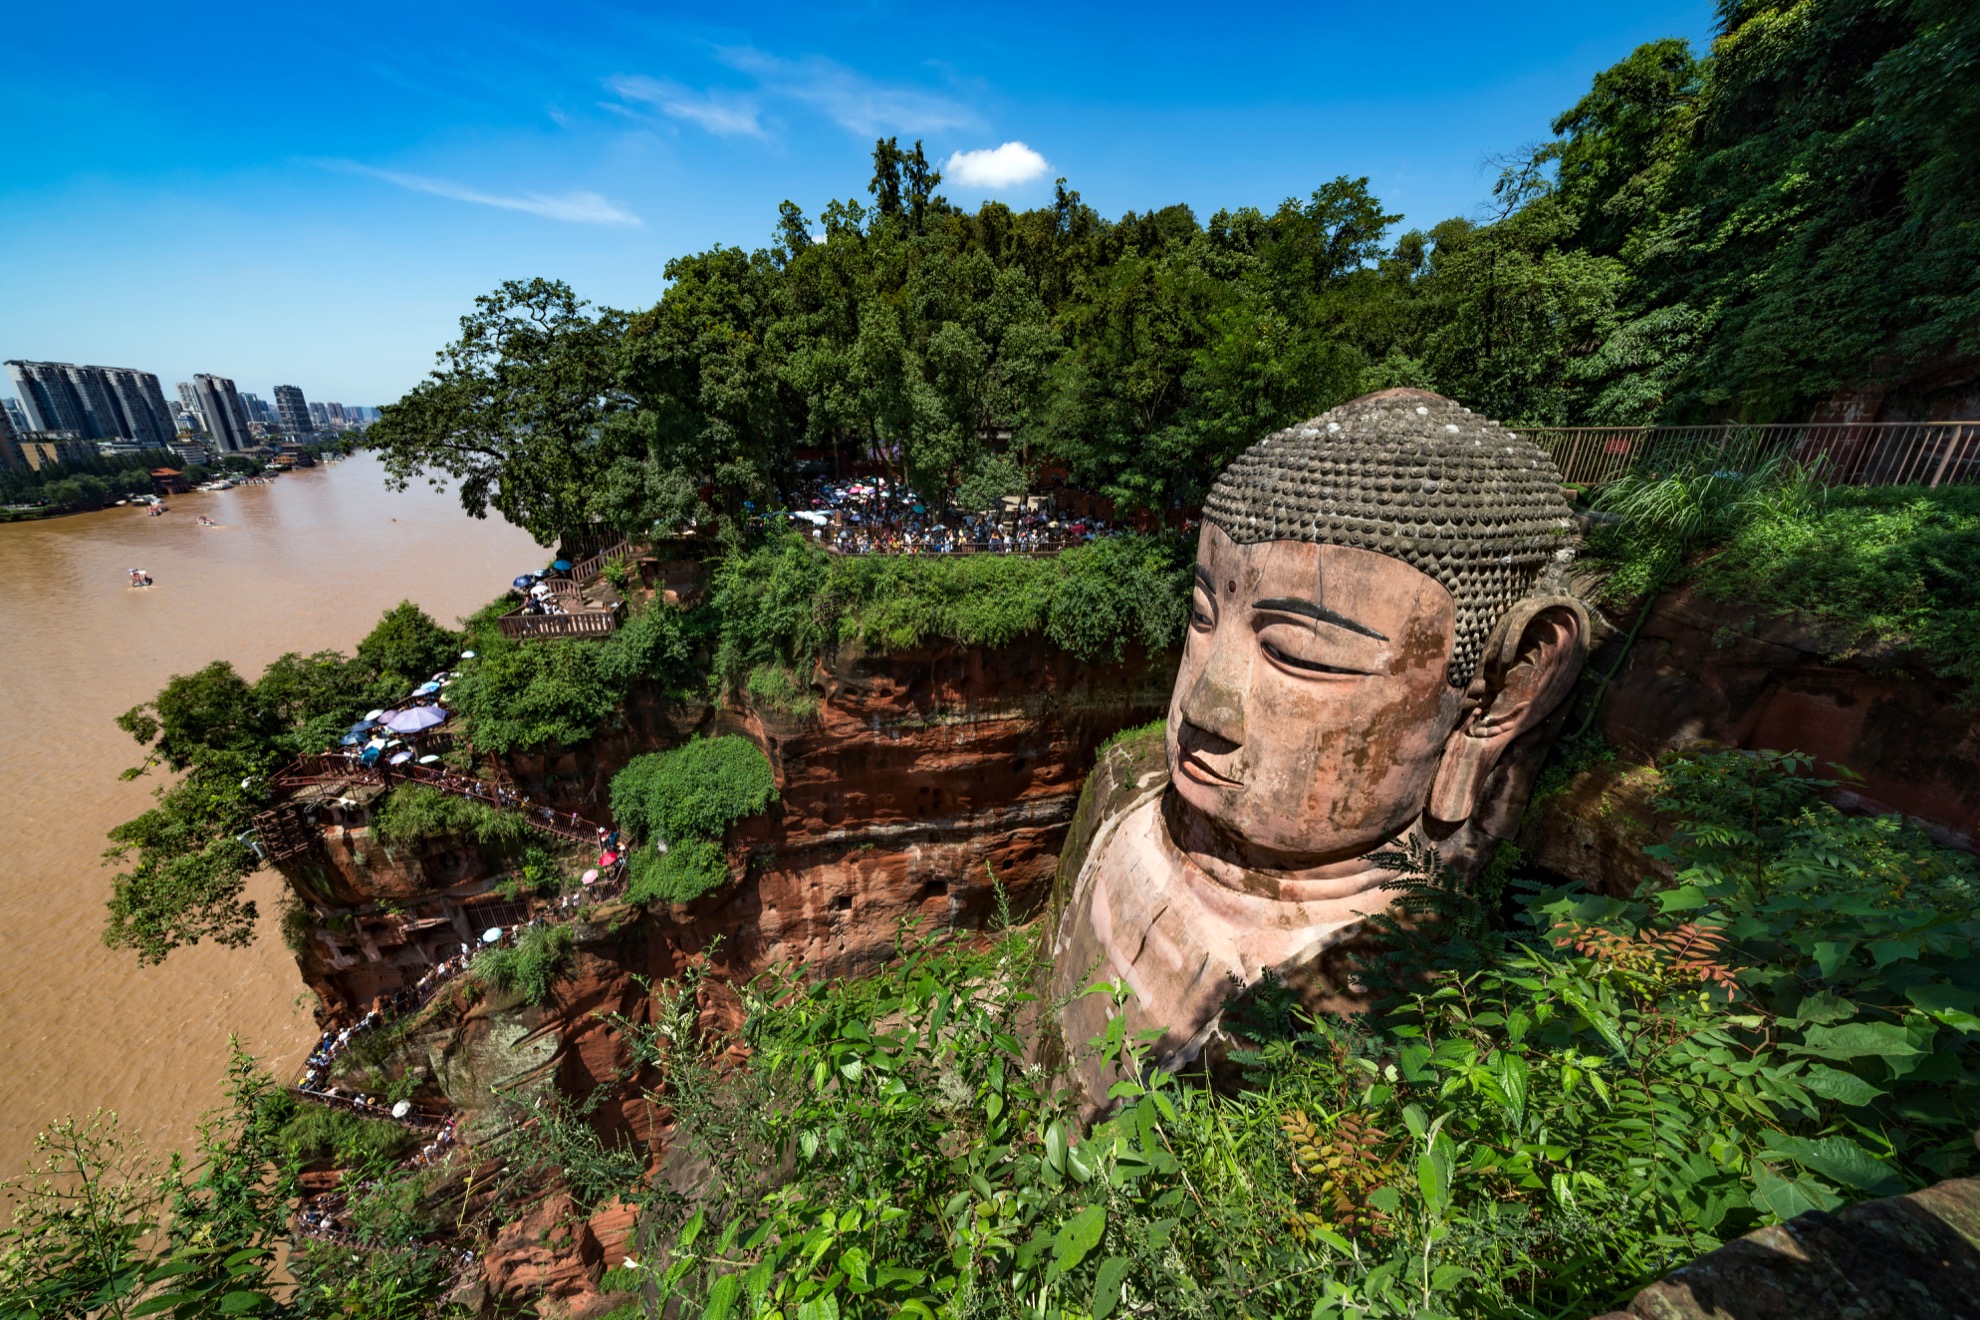 Cómo visitar el Buda gigante de Leshan en China - 15